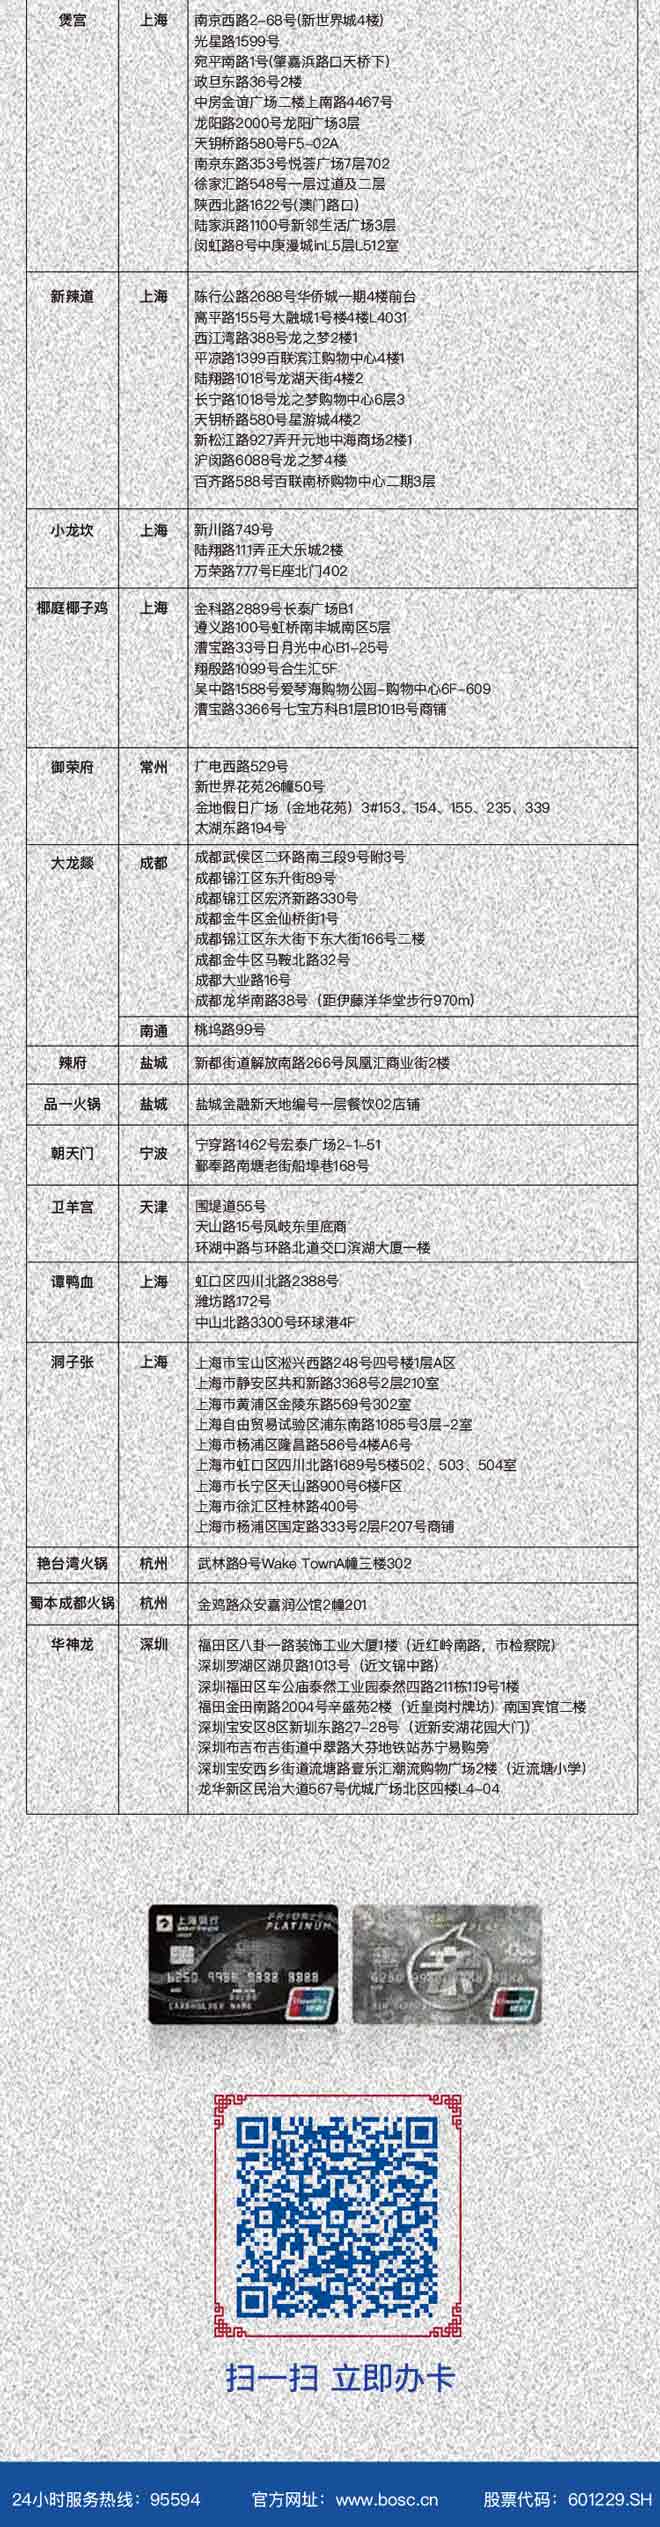 上海银行信用卡指定城市指定火锅店满200-100元